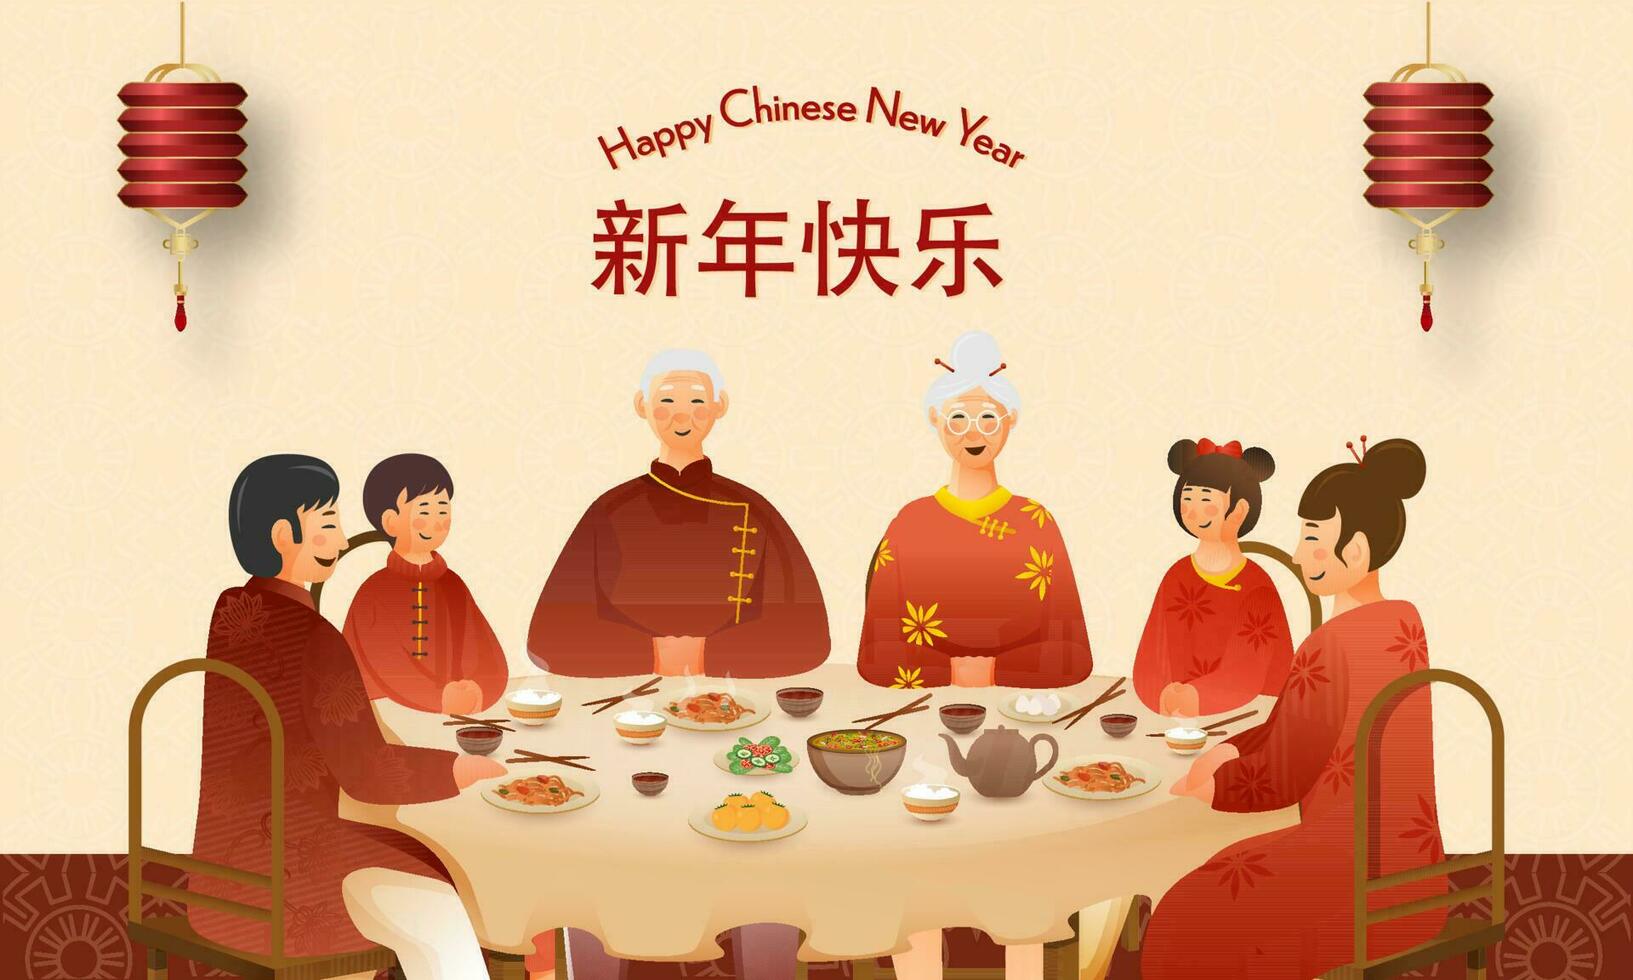 Chinesisch Familie genießen köstlich Mahlzeit zusammen beim Essen Tabelle und Laternen hängen auf Pfirsich Hintergrund zum glücklich Chinesisch Neu Jahr Konzept. vektor